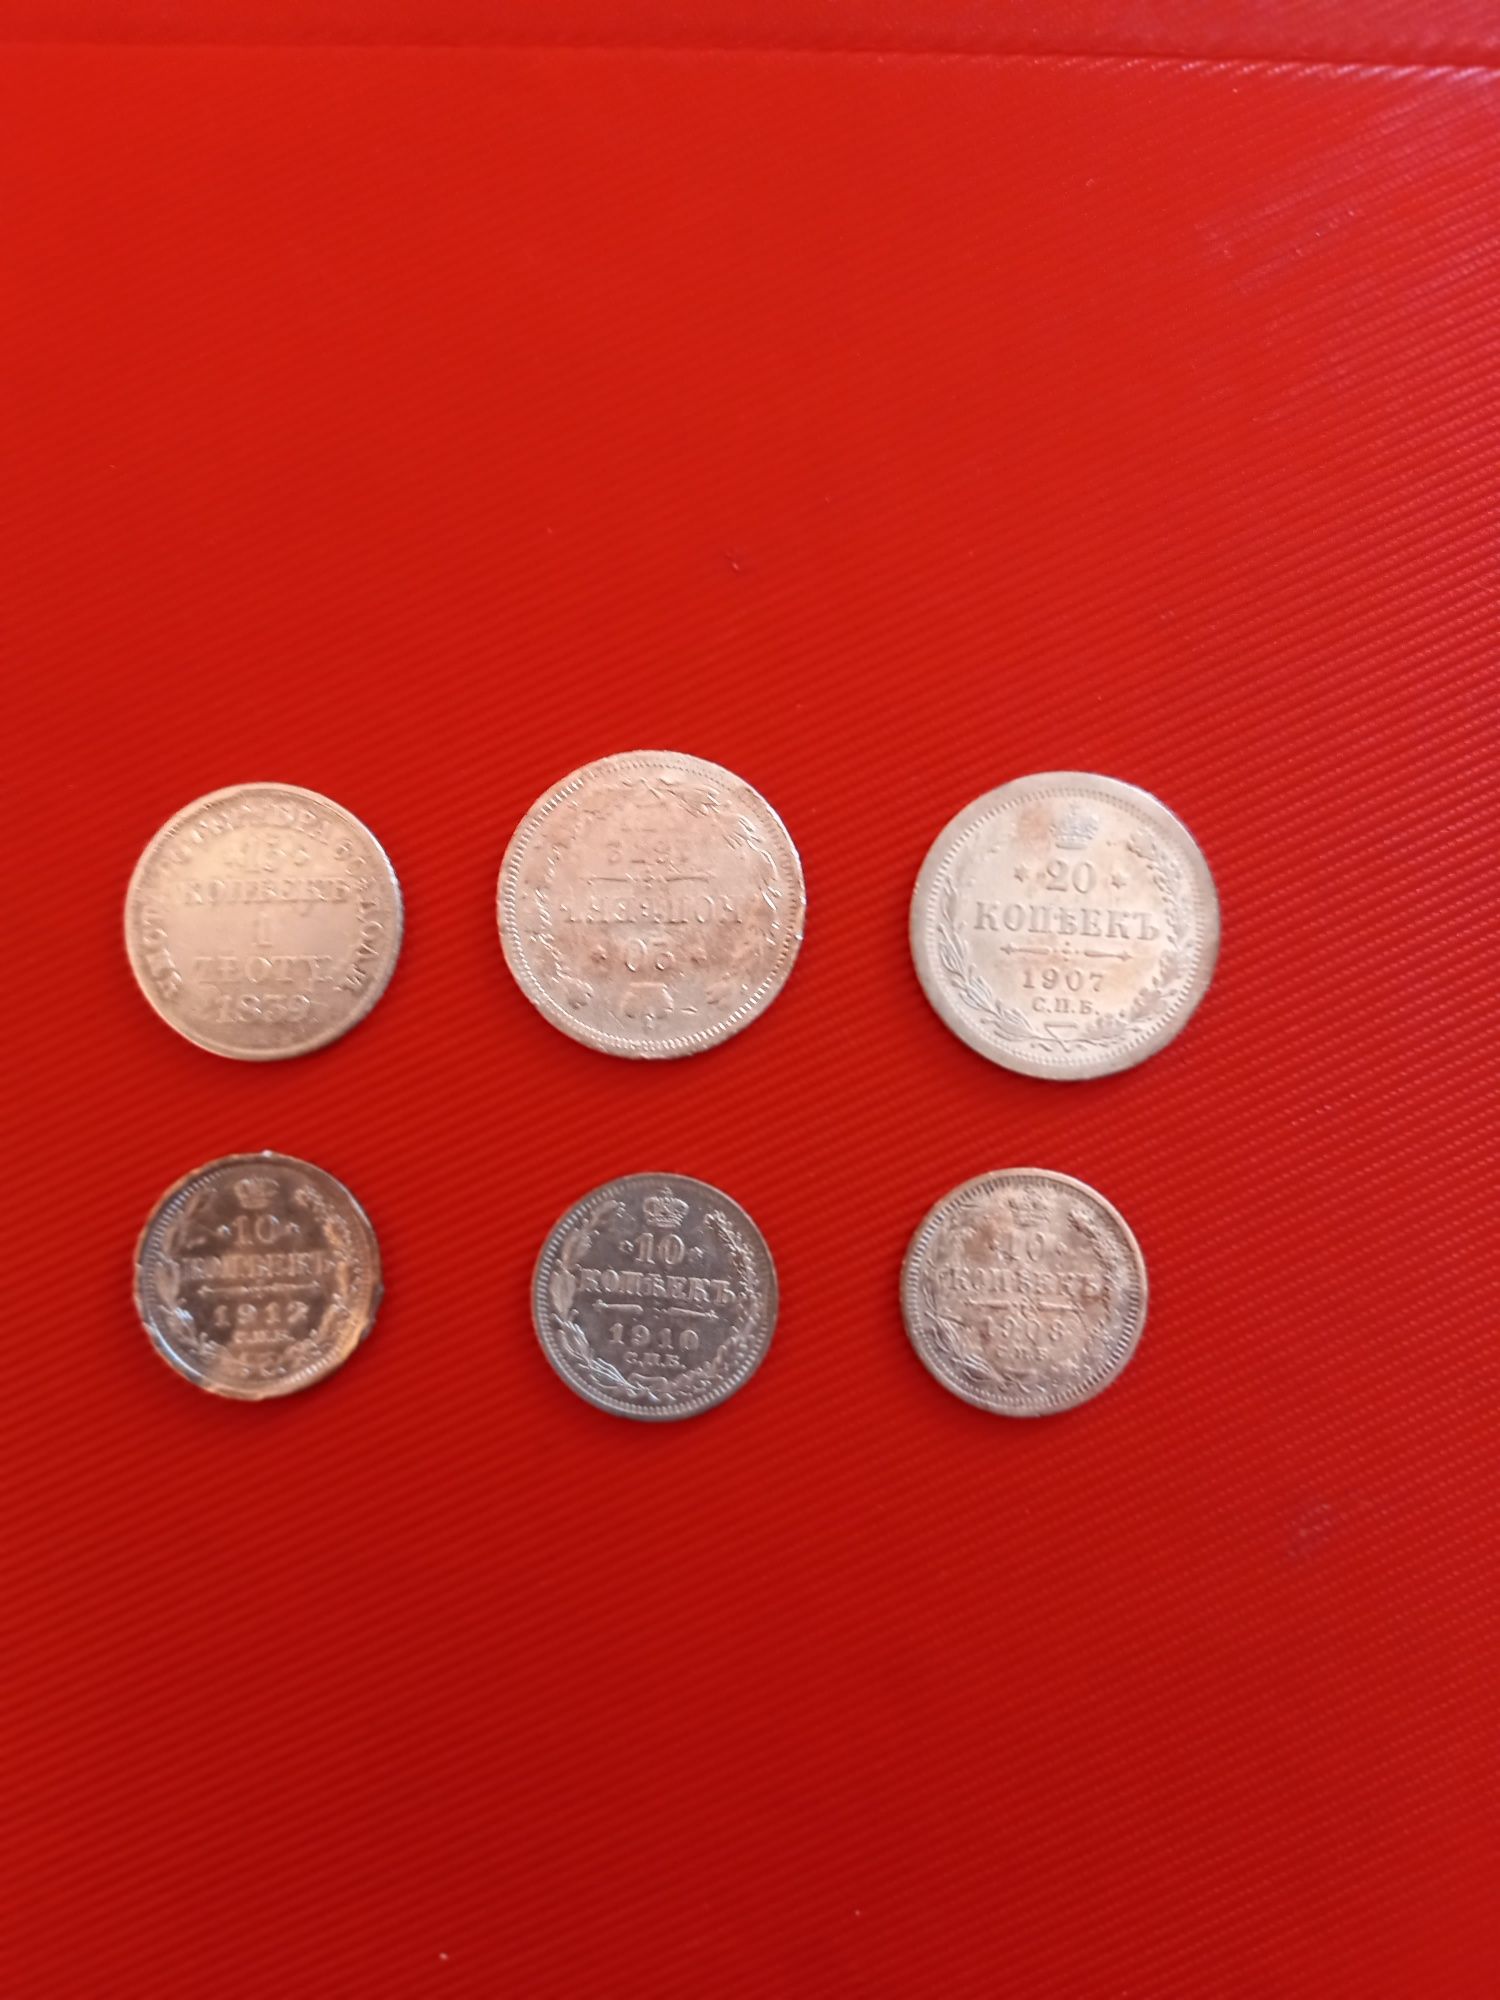 Продам комплект серебрянных монет достоинством 5,10,20 копеек